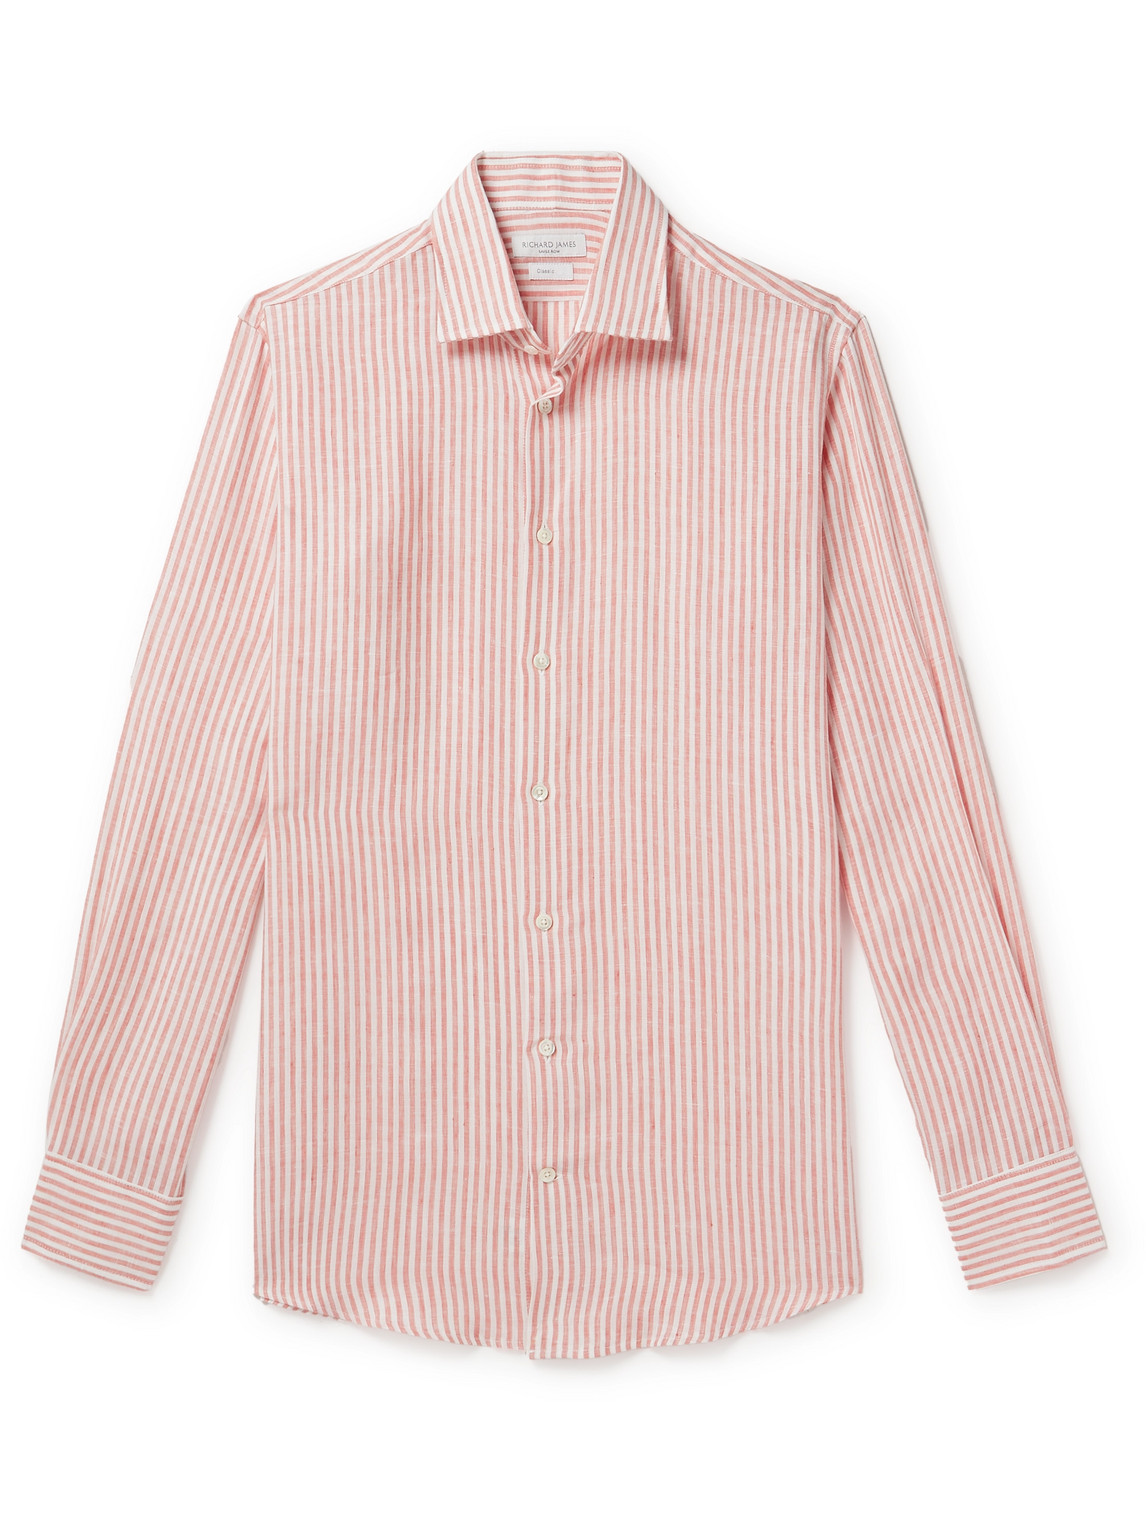 Richard James Striped Linen Shirt In Pink